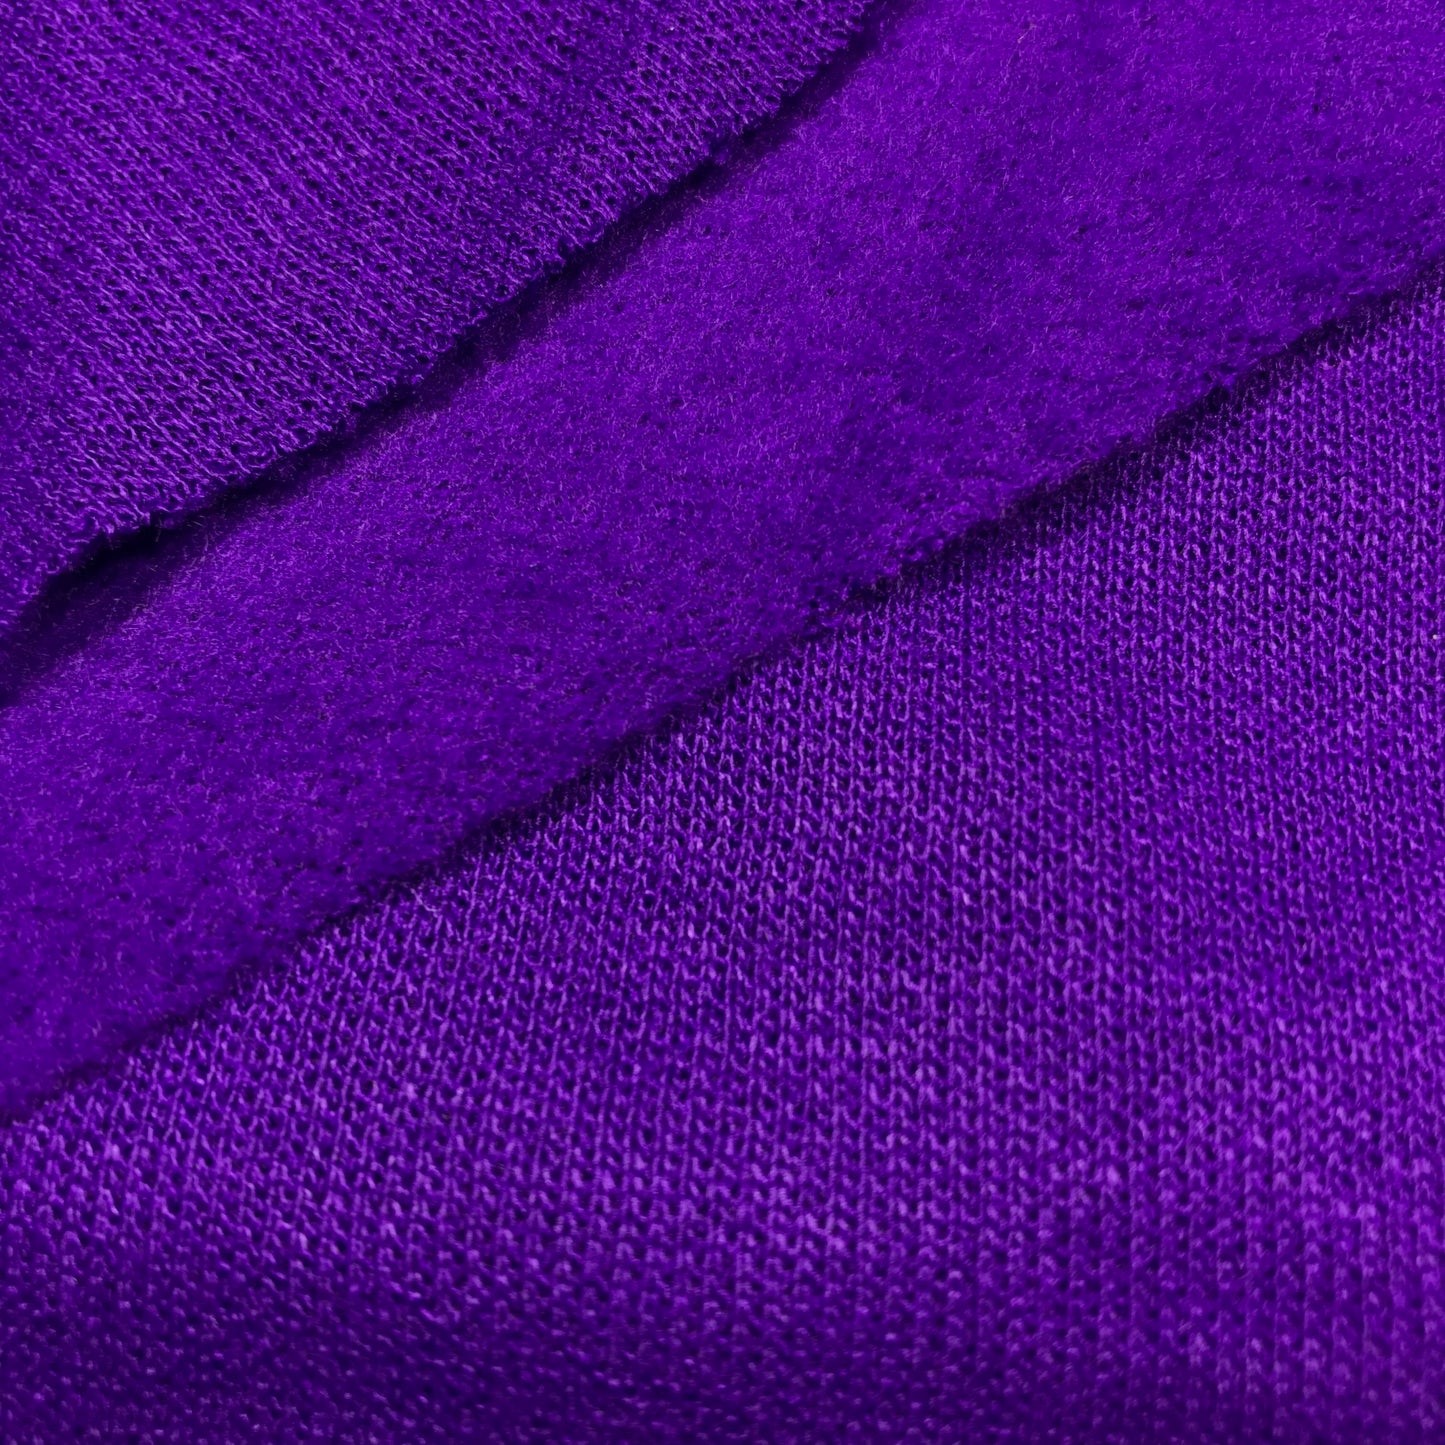 1/2 Yard Purple Fleece-Backed Sweatshirt Jersey Knit Remnant